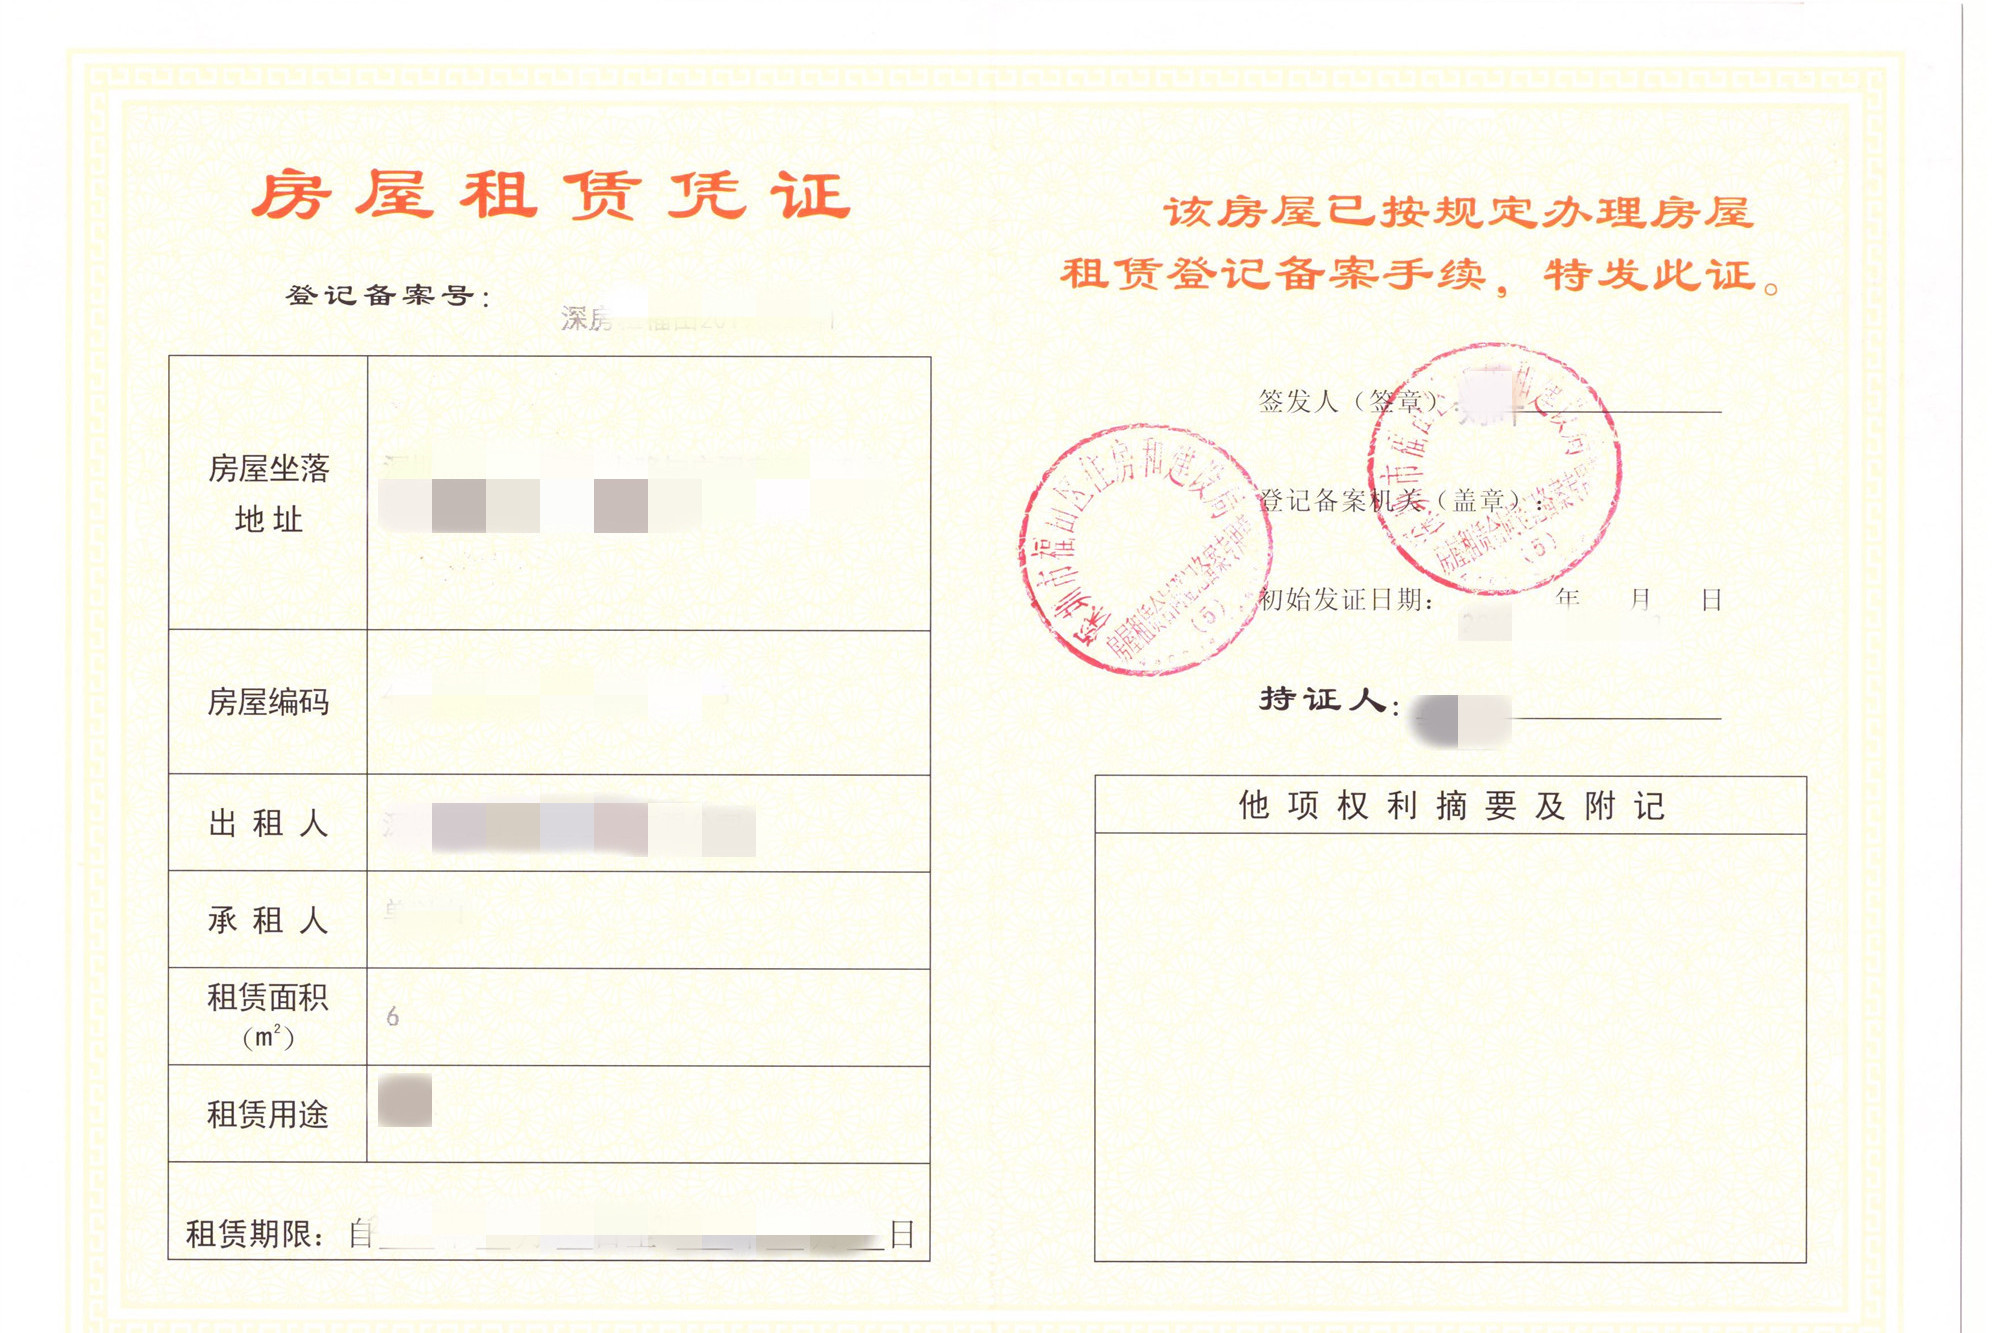 正常手续,申请办理租赁凭证,需要准备的材料: 在深圳